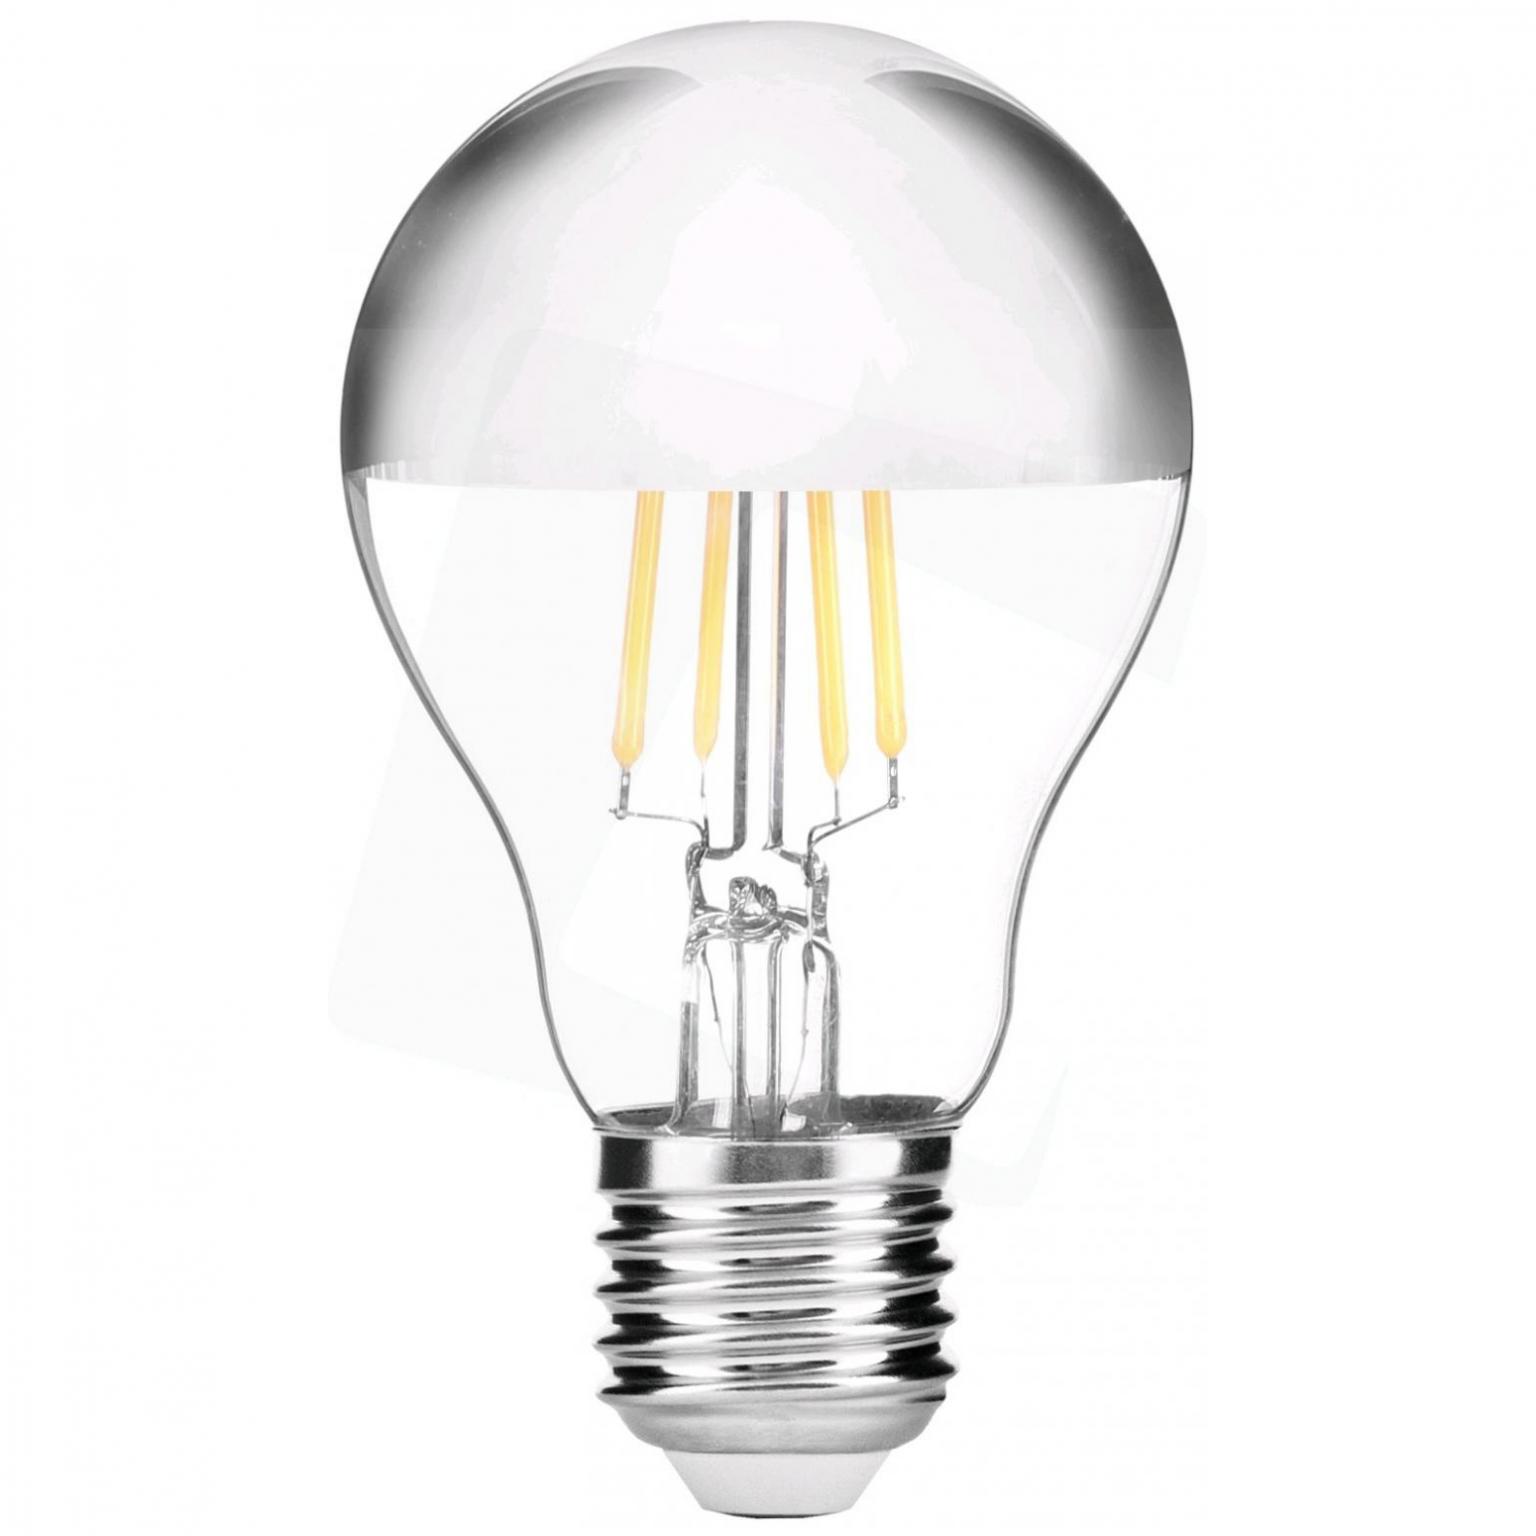 Filament lamp - 610 lumen - Avide